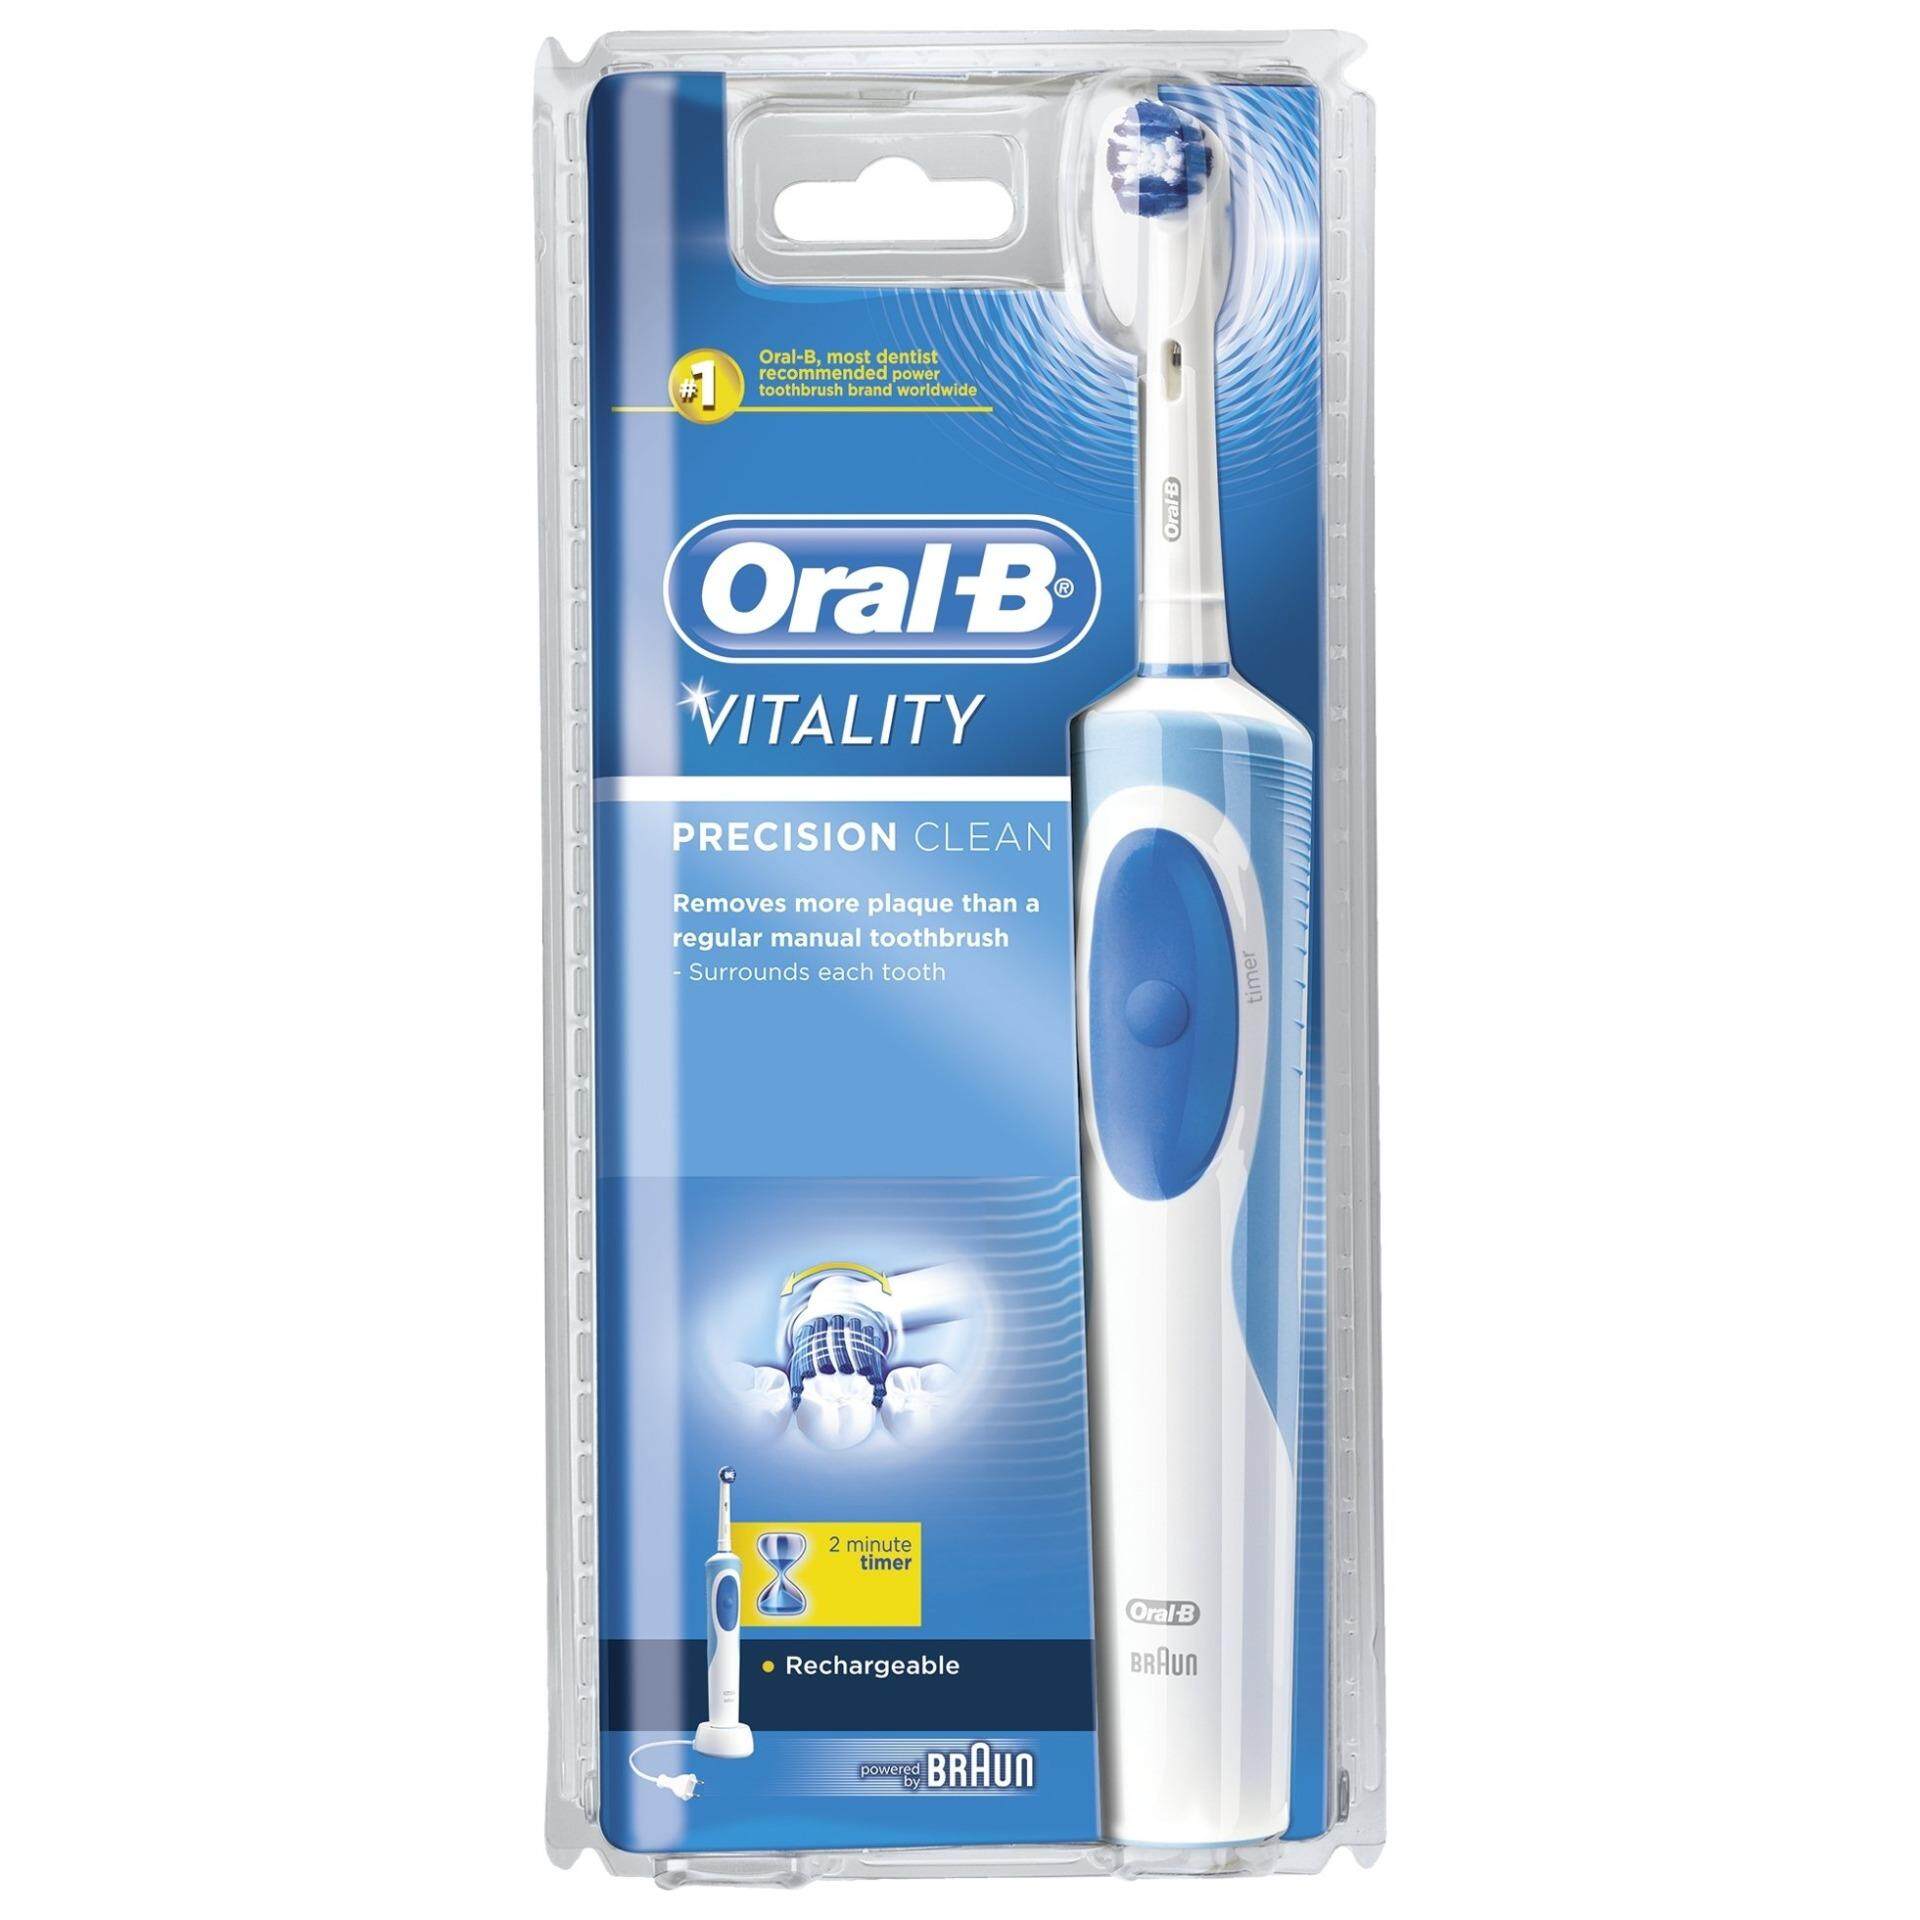 แปรงสีฟันไฟฟ้าเพื่อรอยยิ้มขาวสดใส เชียงราย Oral B แปรงสีฟันไฟฟ้า รุ่น Vitality Precision clean